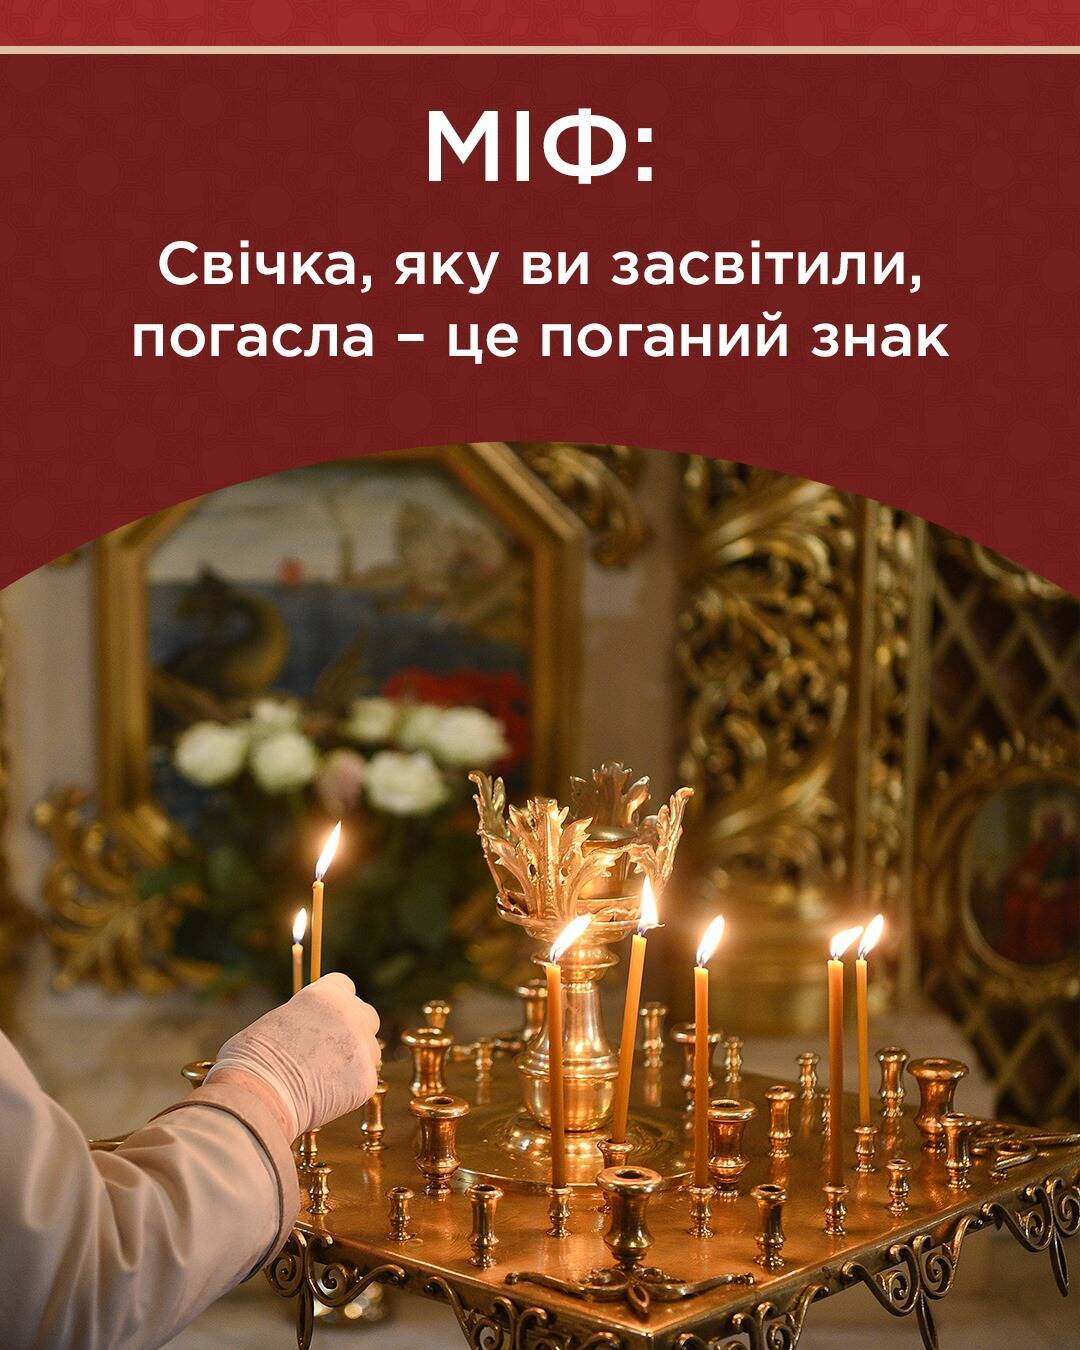 В Православной церкви Украины развенчали суеверие о погасшей свече